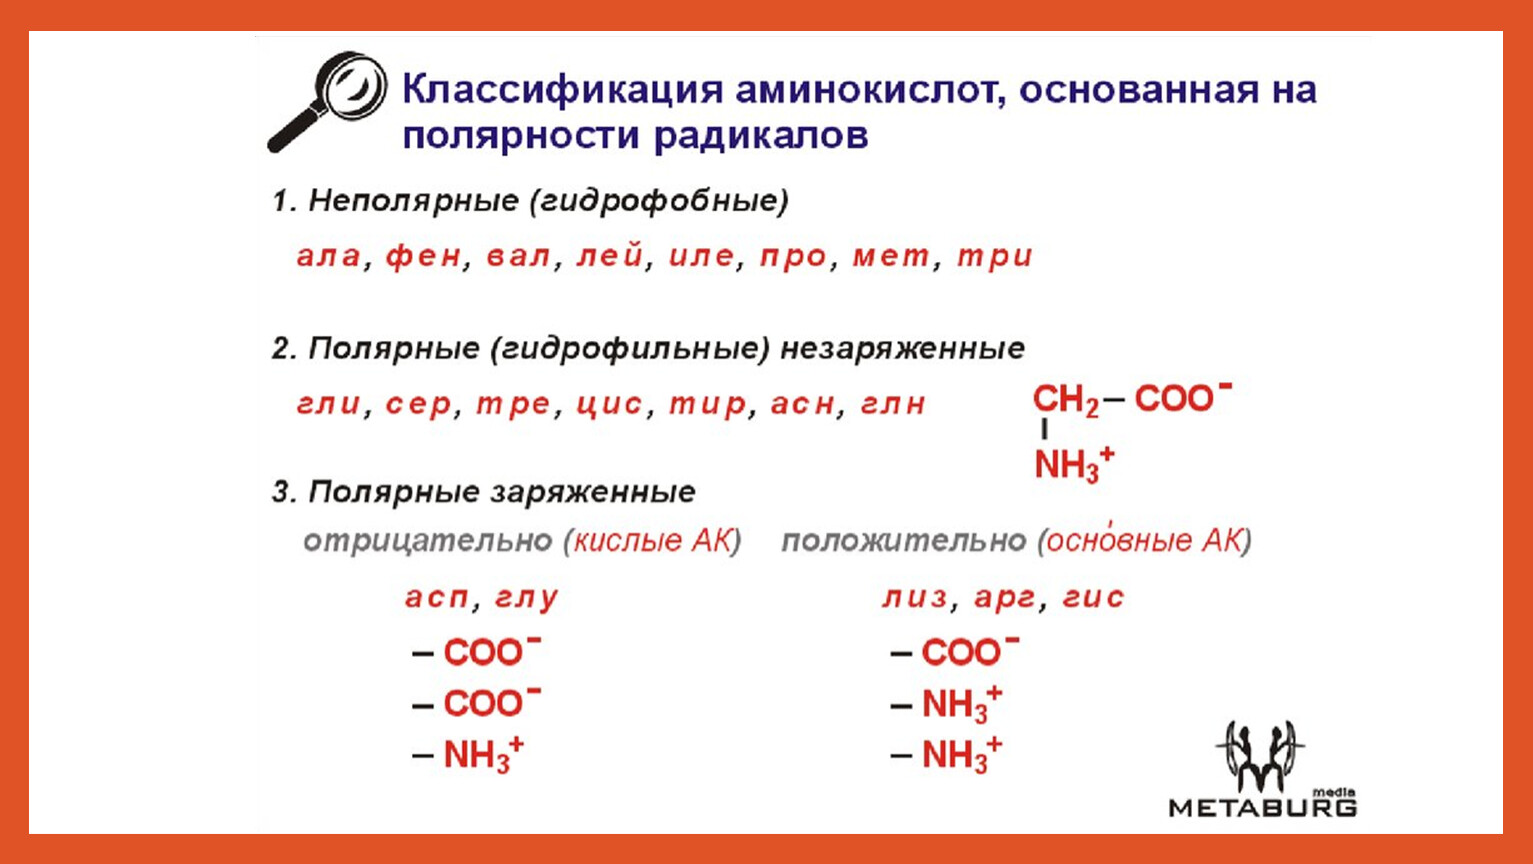 Ала фен лей вал. Электрохимическая классификация аминокислот. Структурная классификация аминокислот. Классификация аминокислот по гидрофобности радикалов. Классификация аминокислот по полярности радикалов.